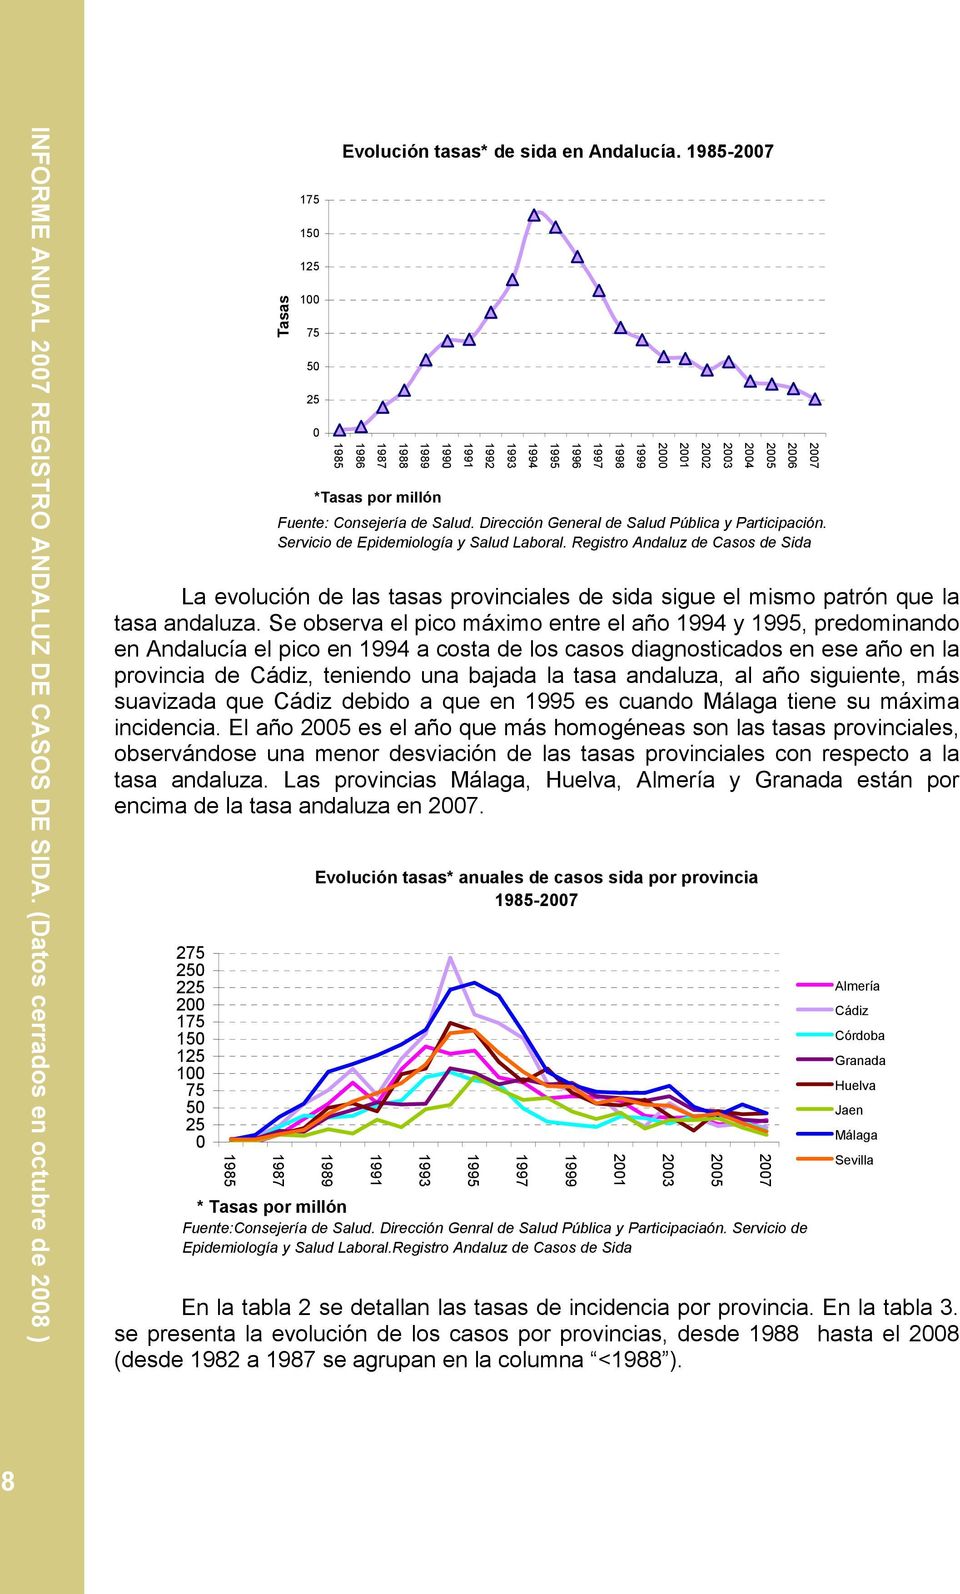 Registro Andaluz de Casos de Sida La evolución de las tasas provinciales de sida sigue el mismo patrón que la tasa andaluza.